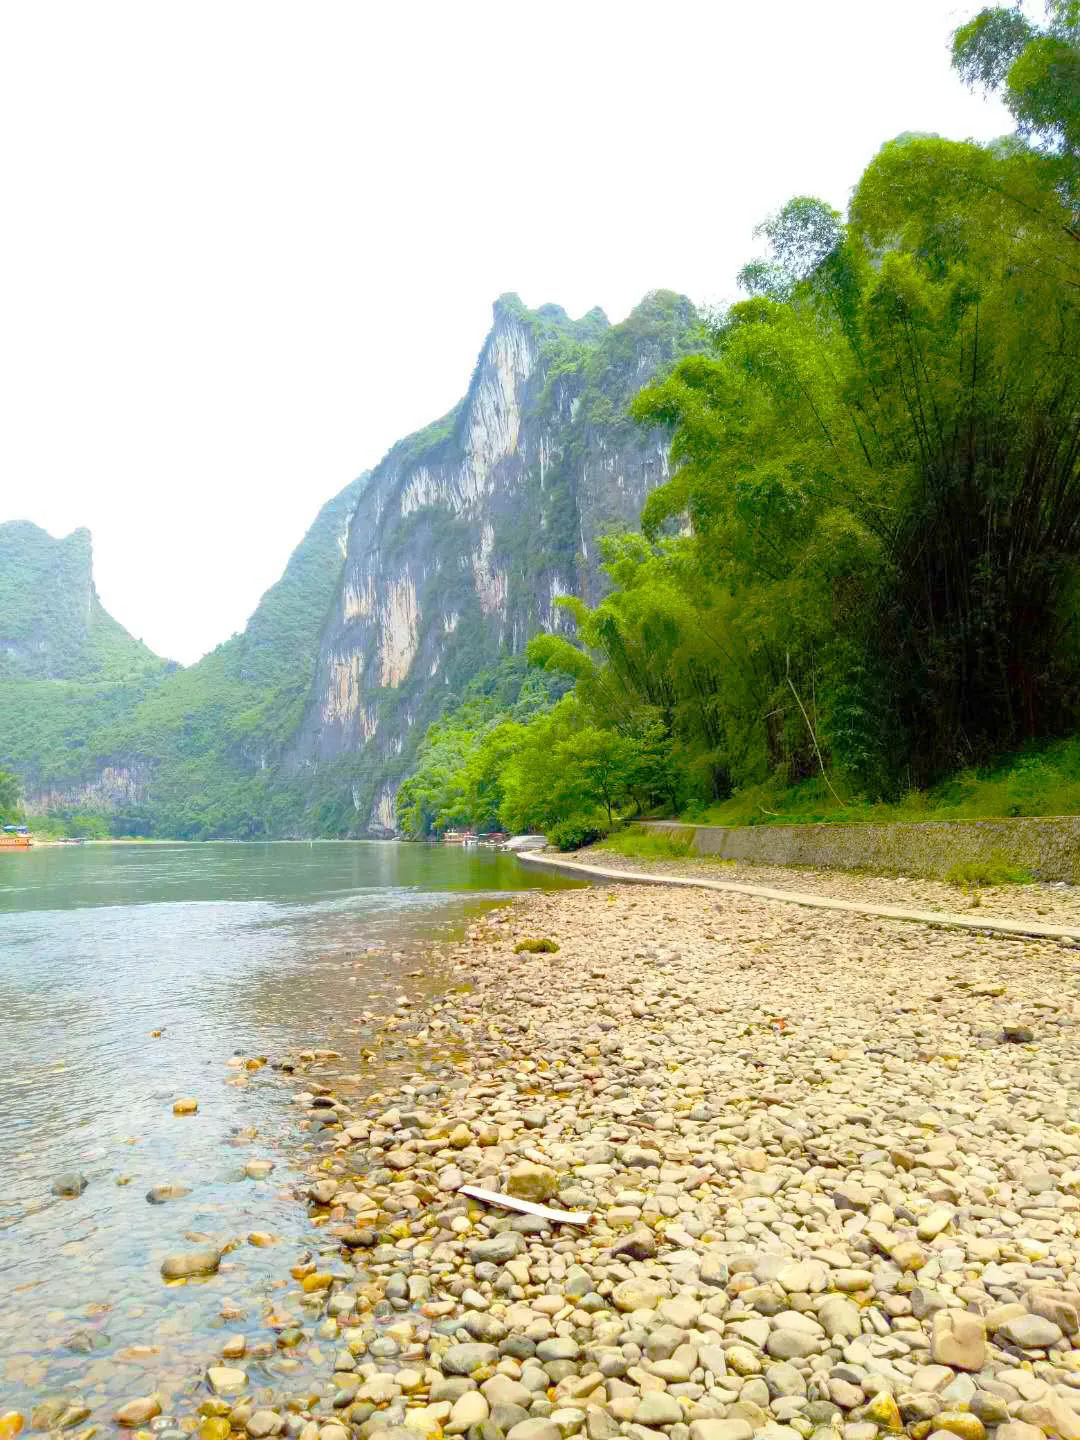 赞美桂林山水的短句有哪些-描写桂林山水美景如画的精美句子